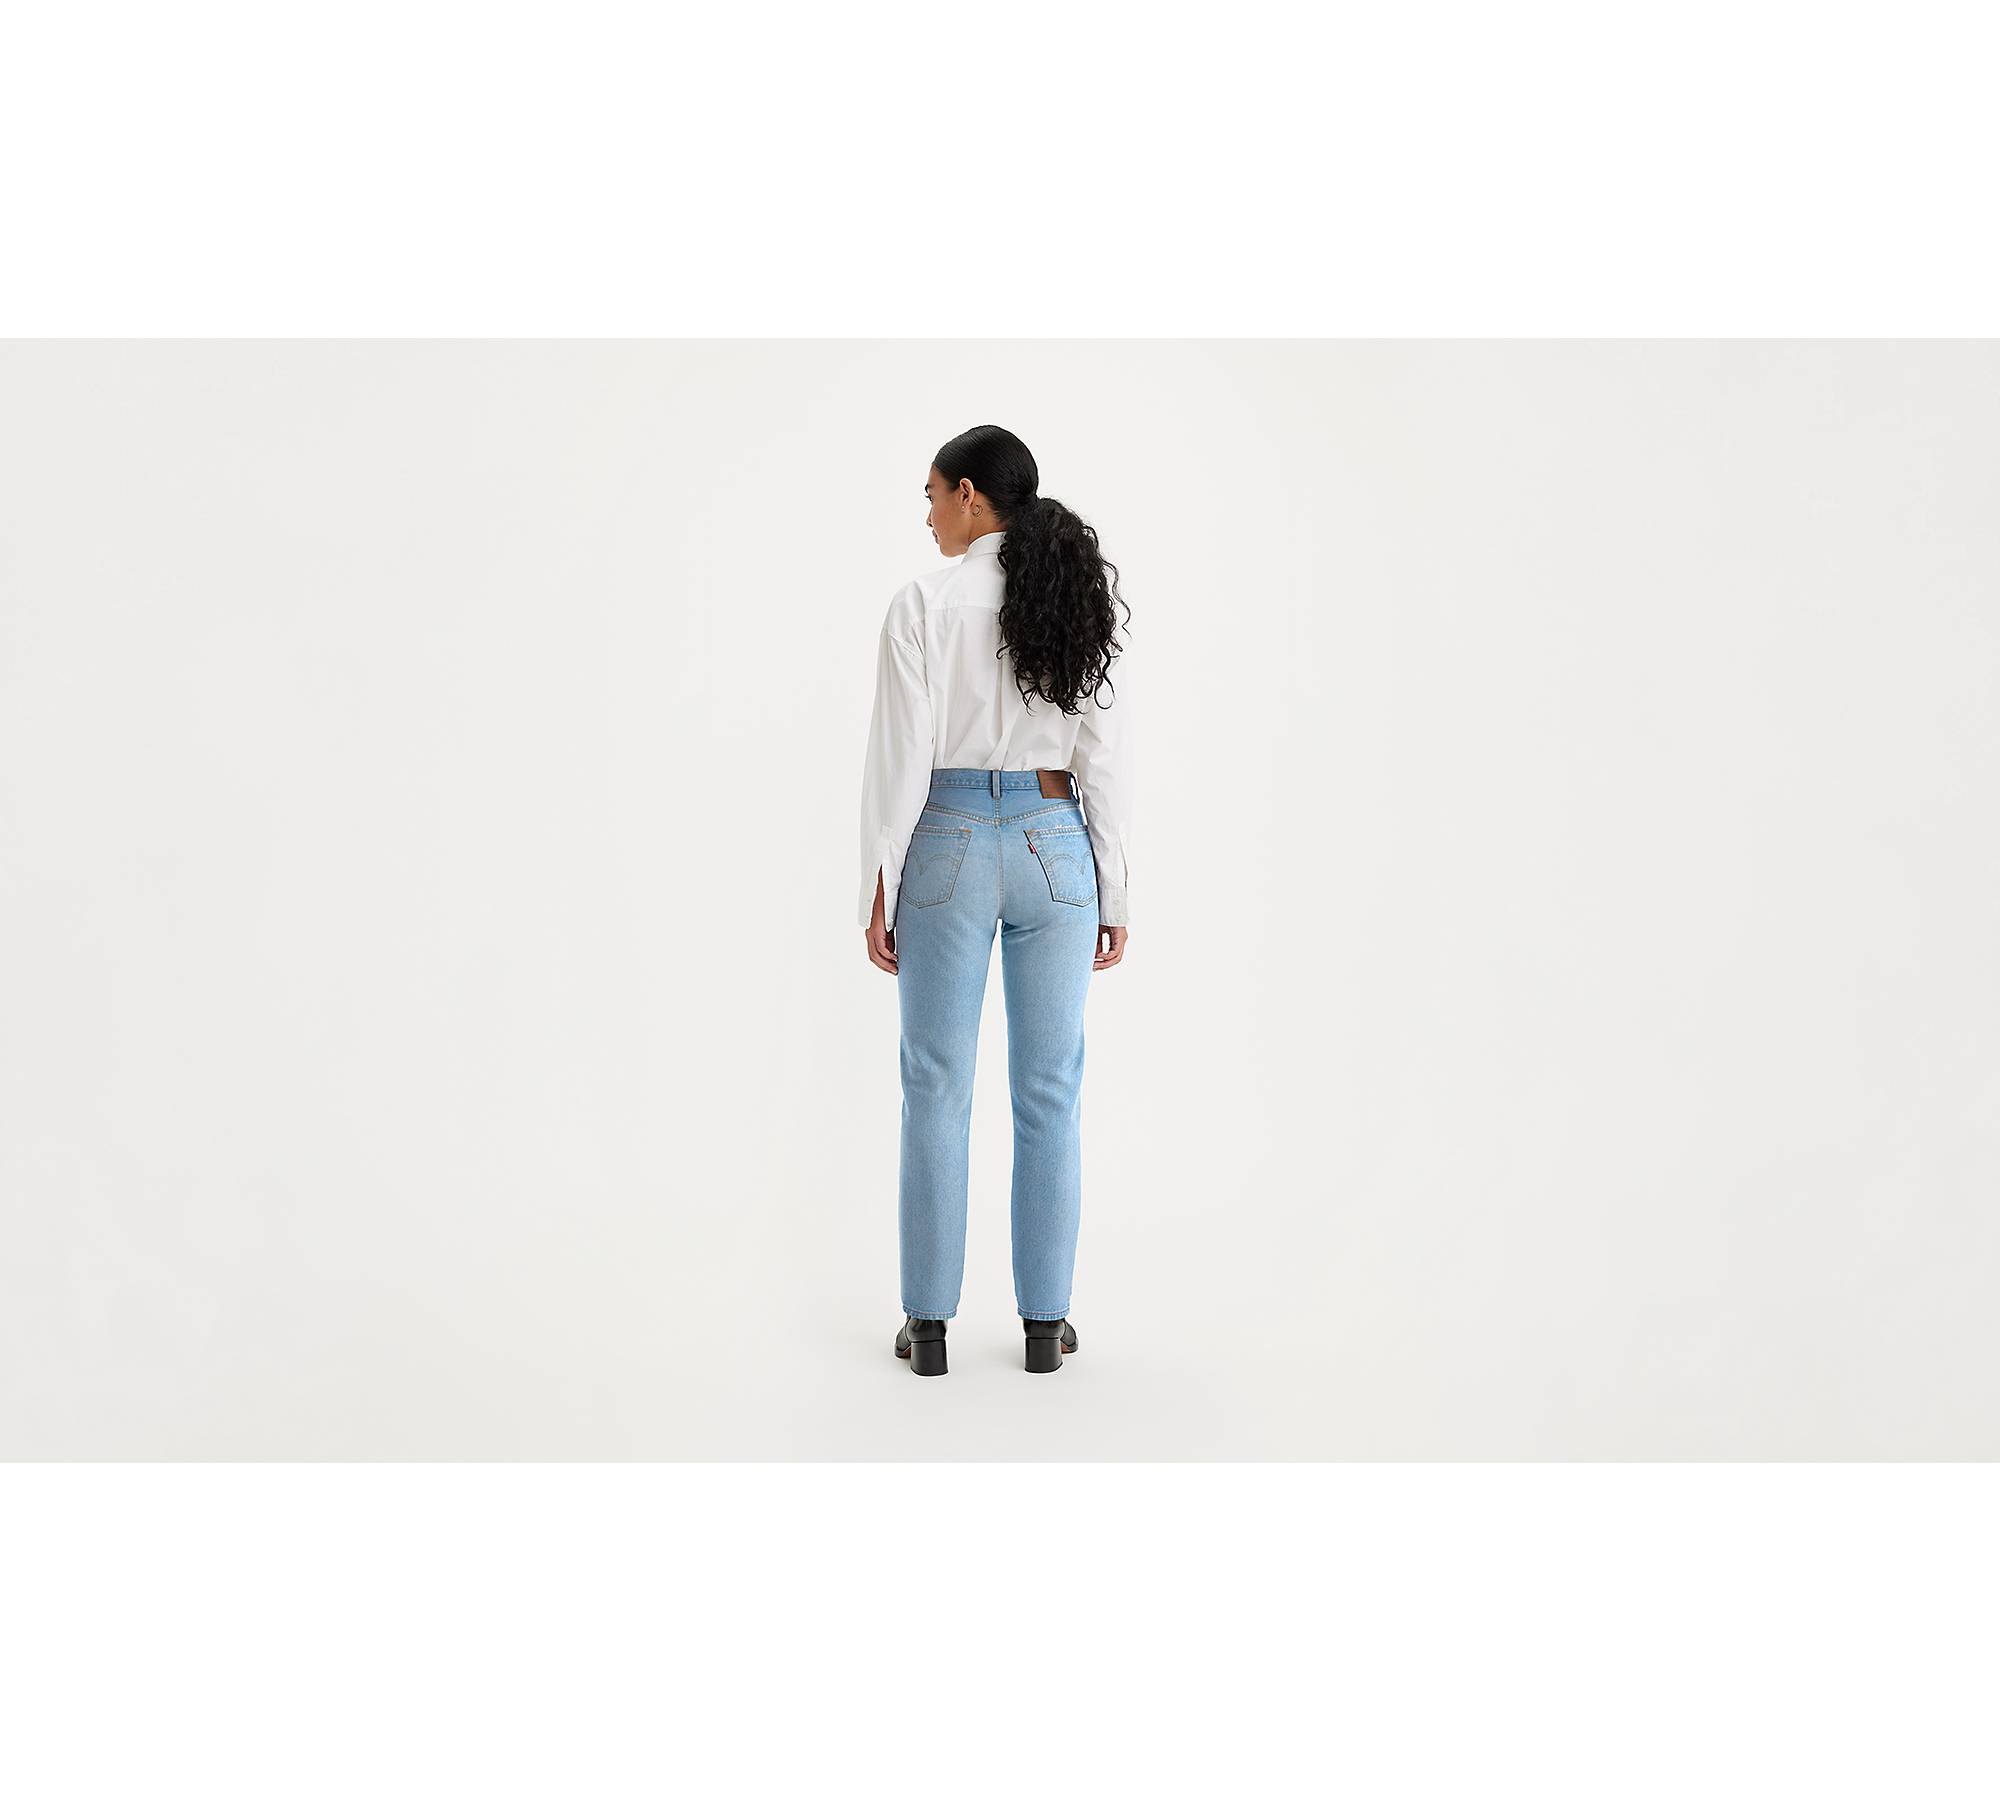 Levis 501 Womens Jeans